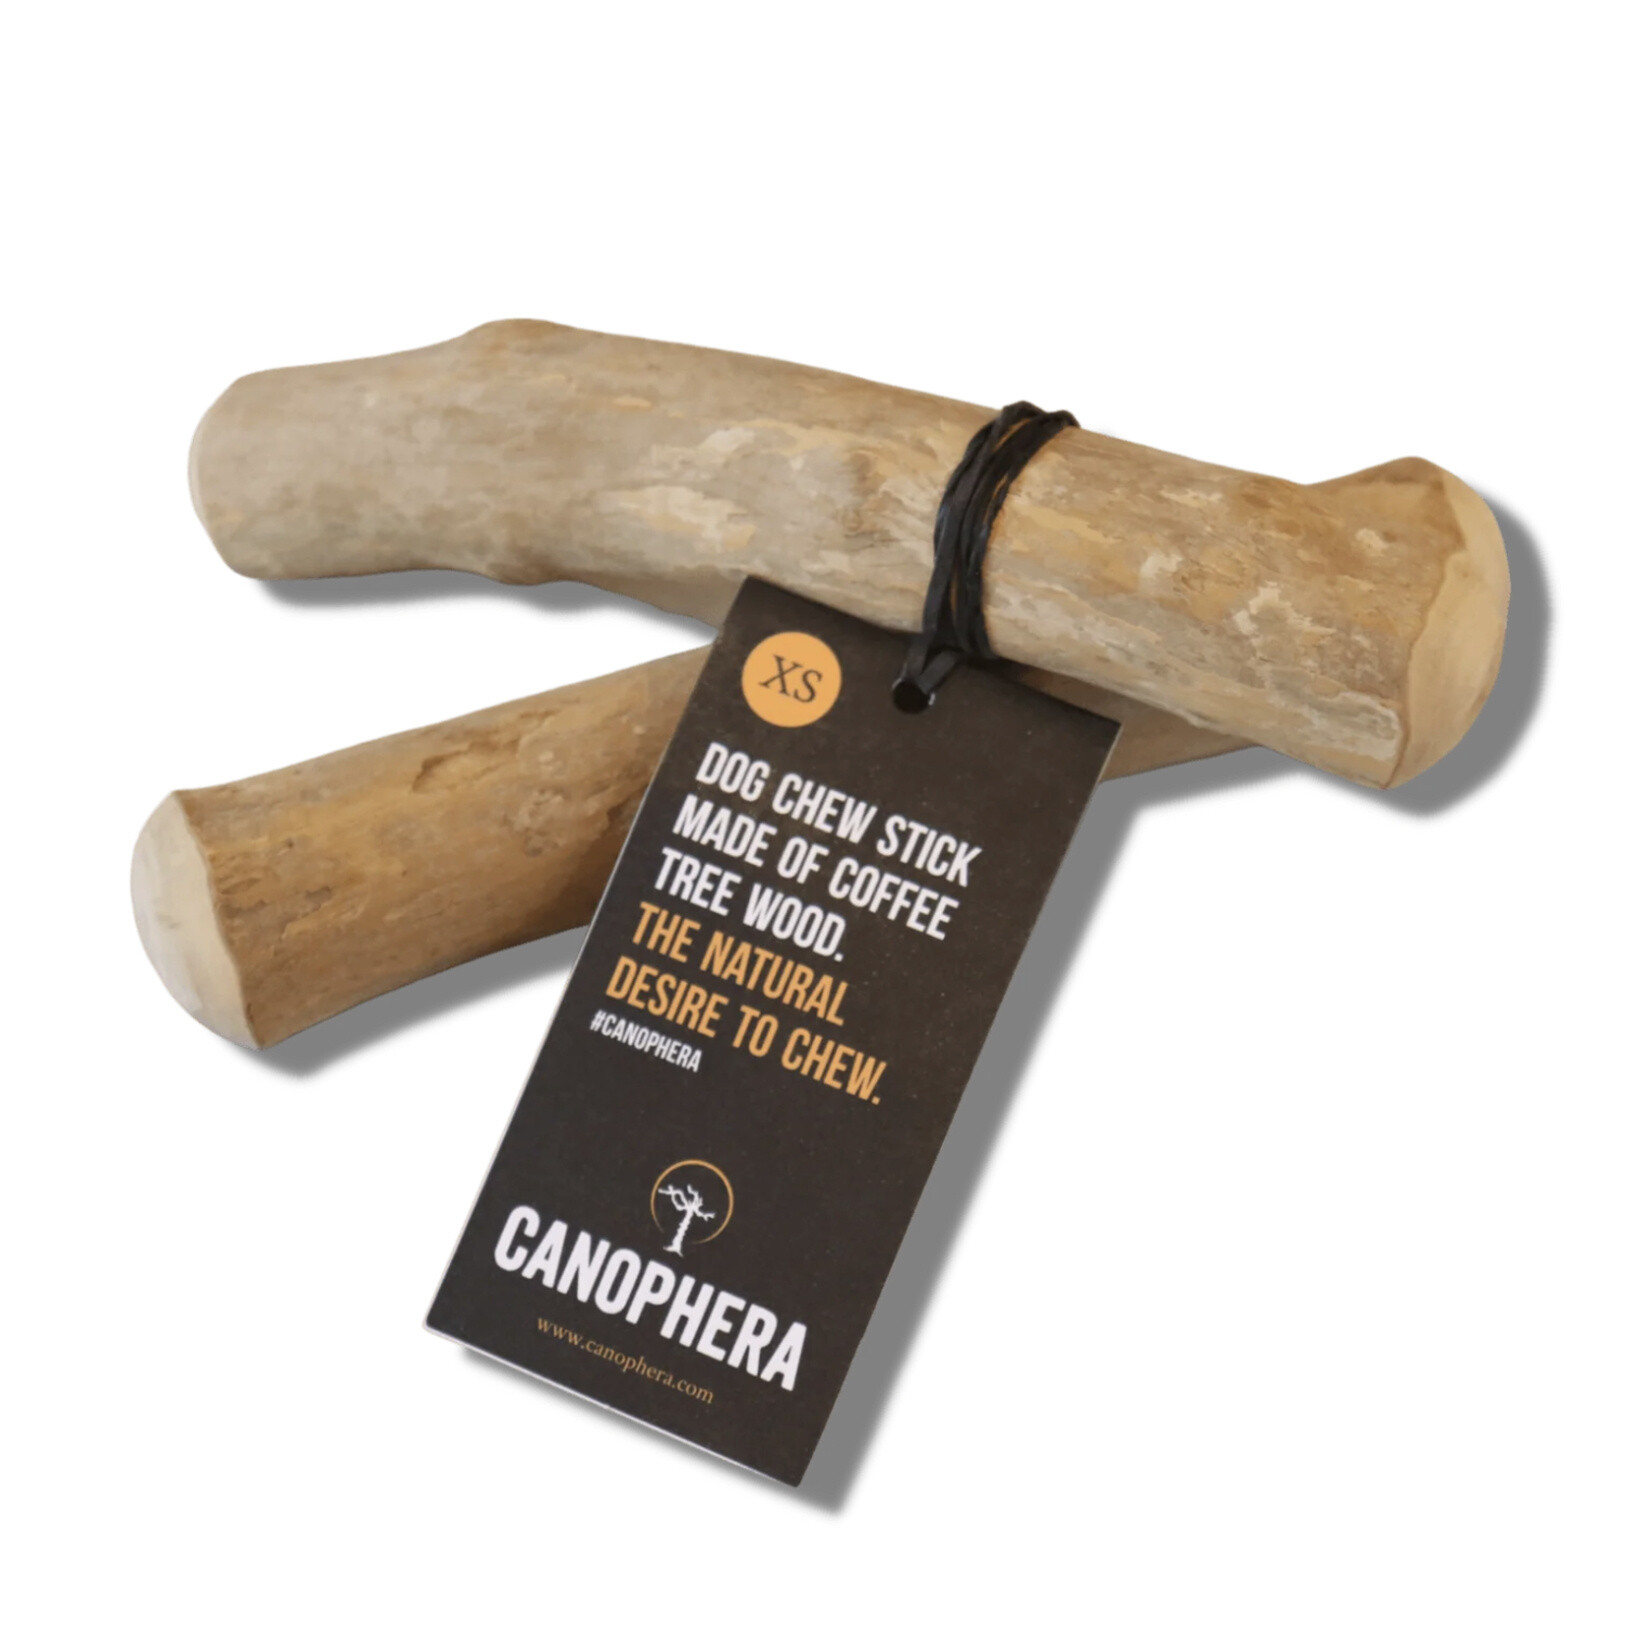 Canophera Canophera Coffee Wood Chew Stick